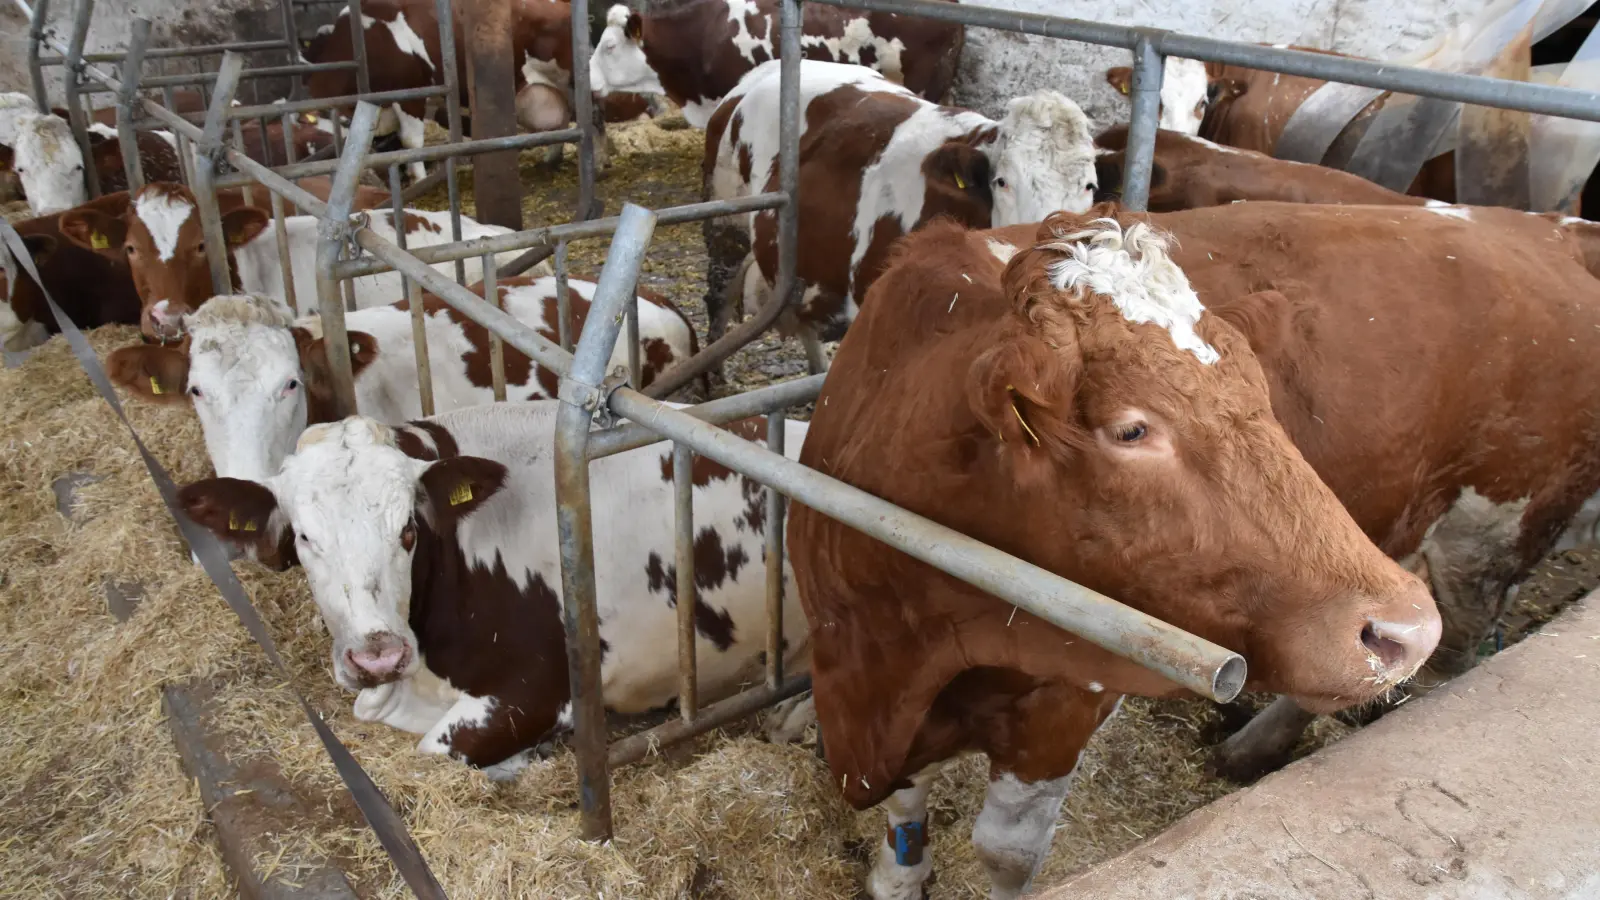 Einstreu mit frischem Stroh ist eine aufwendige Stallhaltung für Landwirte: In diesem Laufstall können sich die Rinder frei bewegen und ihren Platz zum Liegen und Fressen einnehmen. (Foto: Silvia Schäfer)